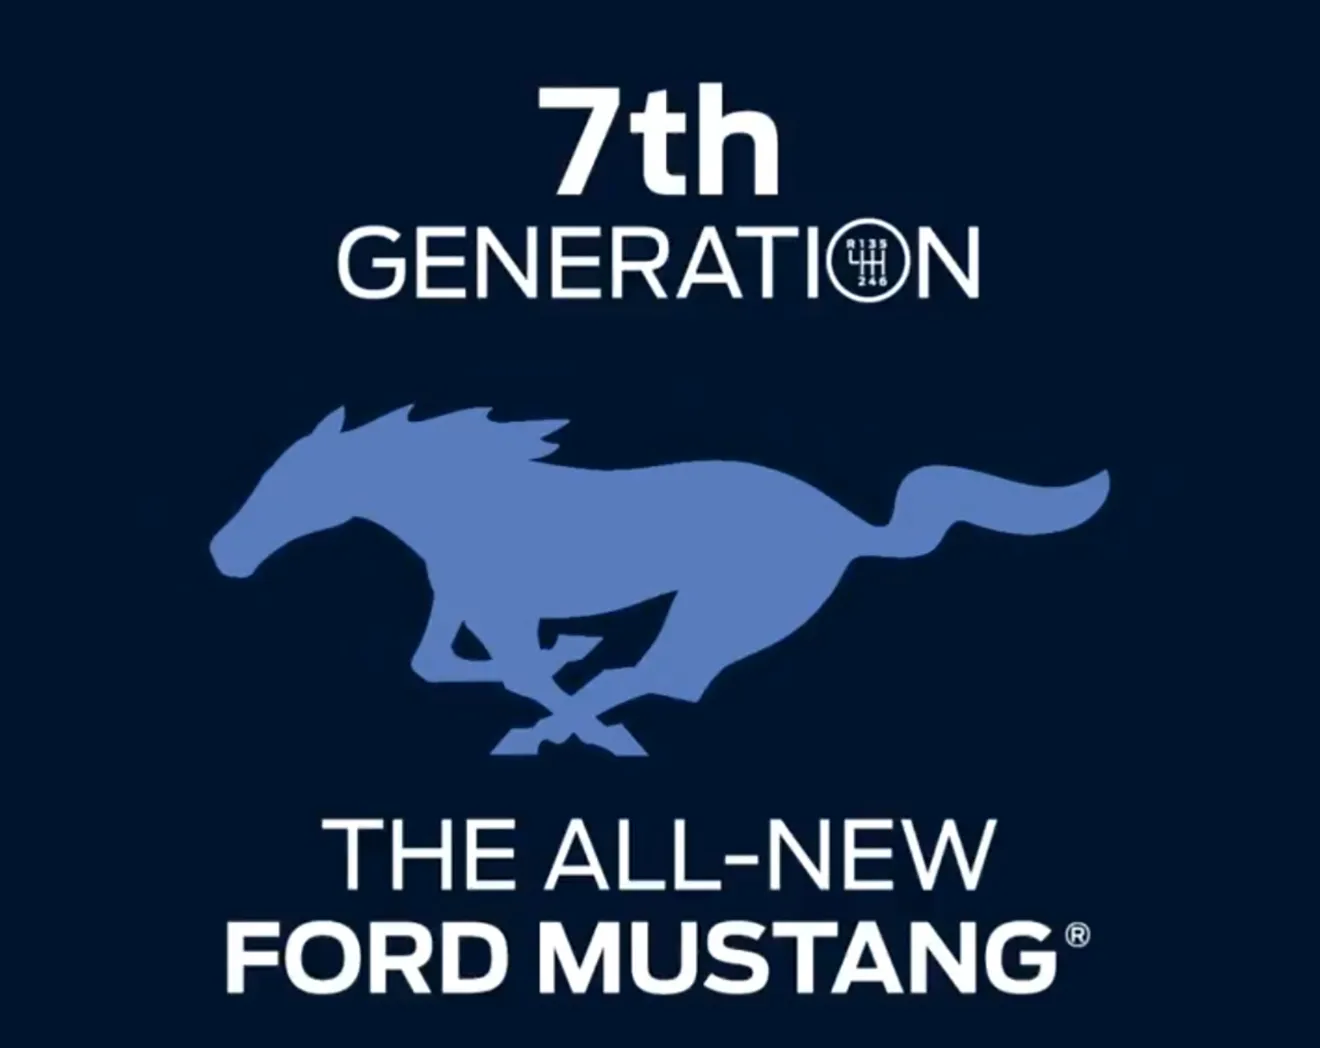 El adelanto del nuevo Ford Mustang S650 revela un interesante detalle